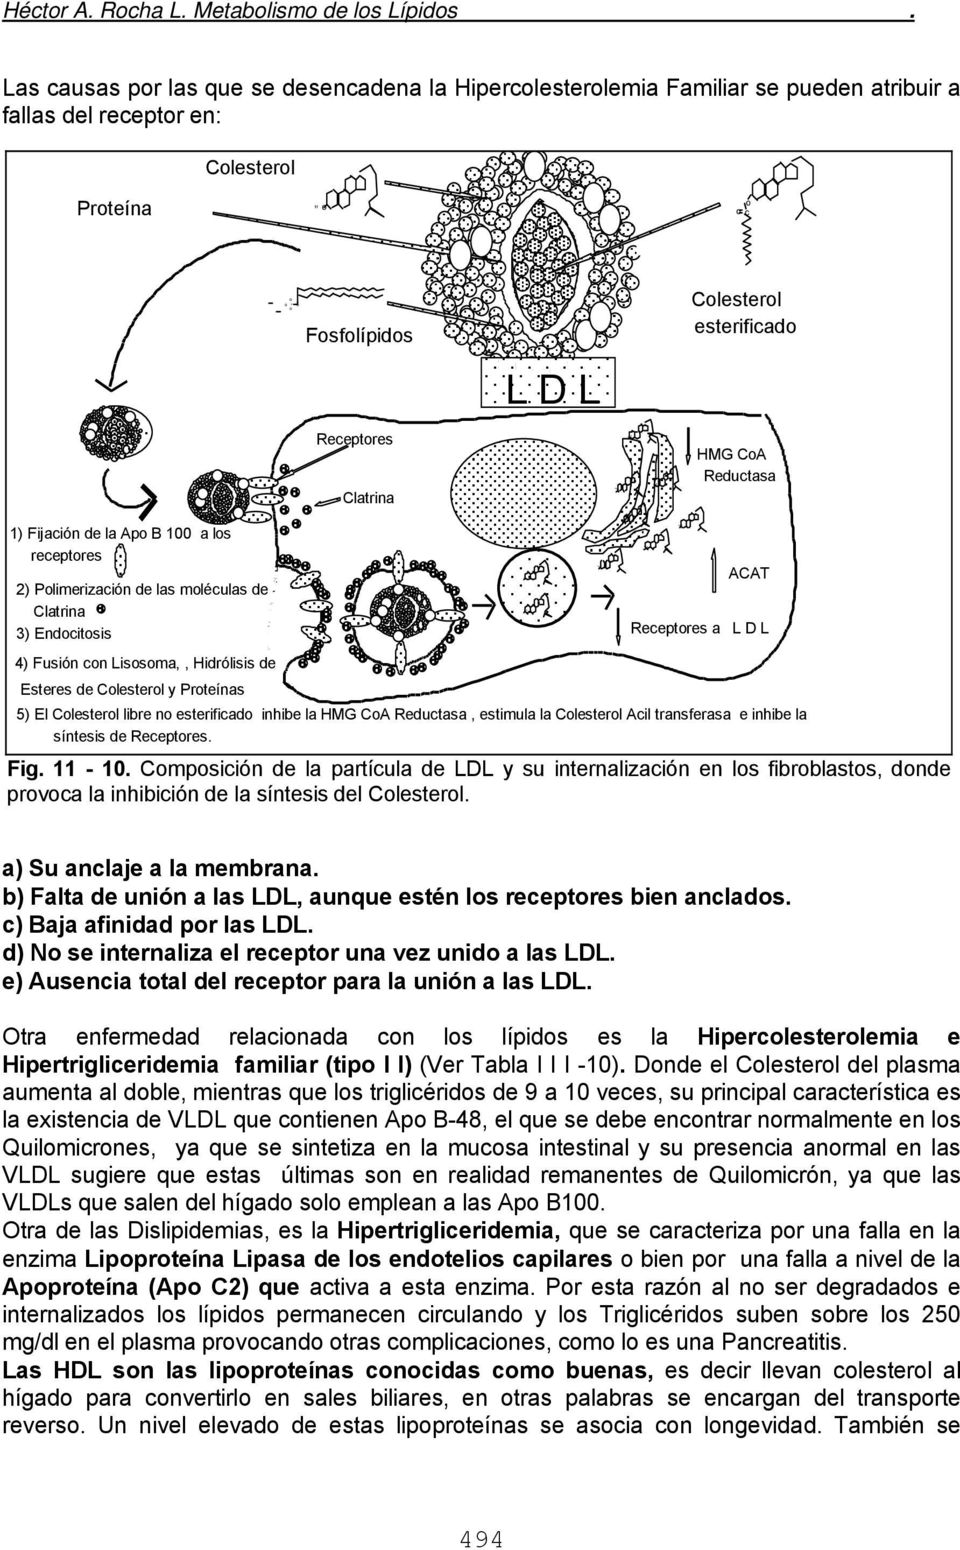 Receptores latrina MG oa Reductasa 1) Fijación de la Apo B 100 a los receptores ) Polimerización de las moléculas de latrina ) Endocitosis 4) Fusión con Lisosoma,, idrólisis de Esteres de olesterol y